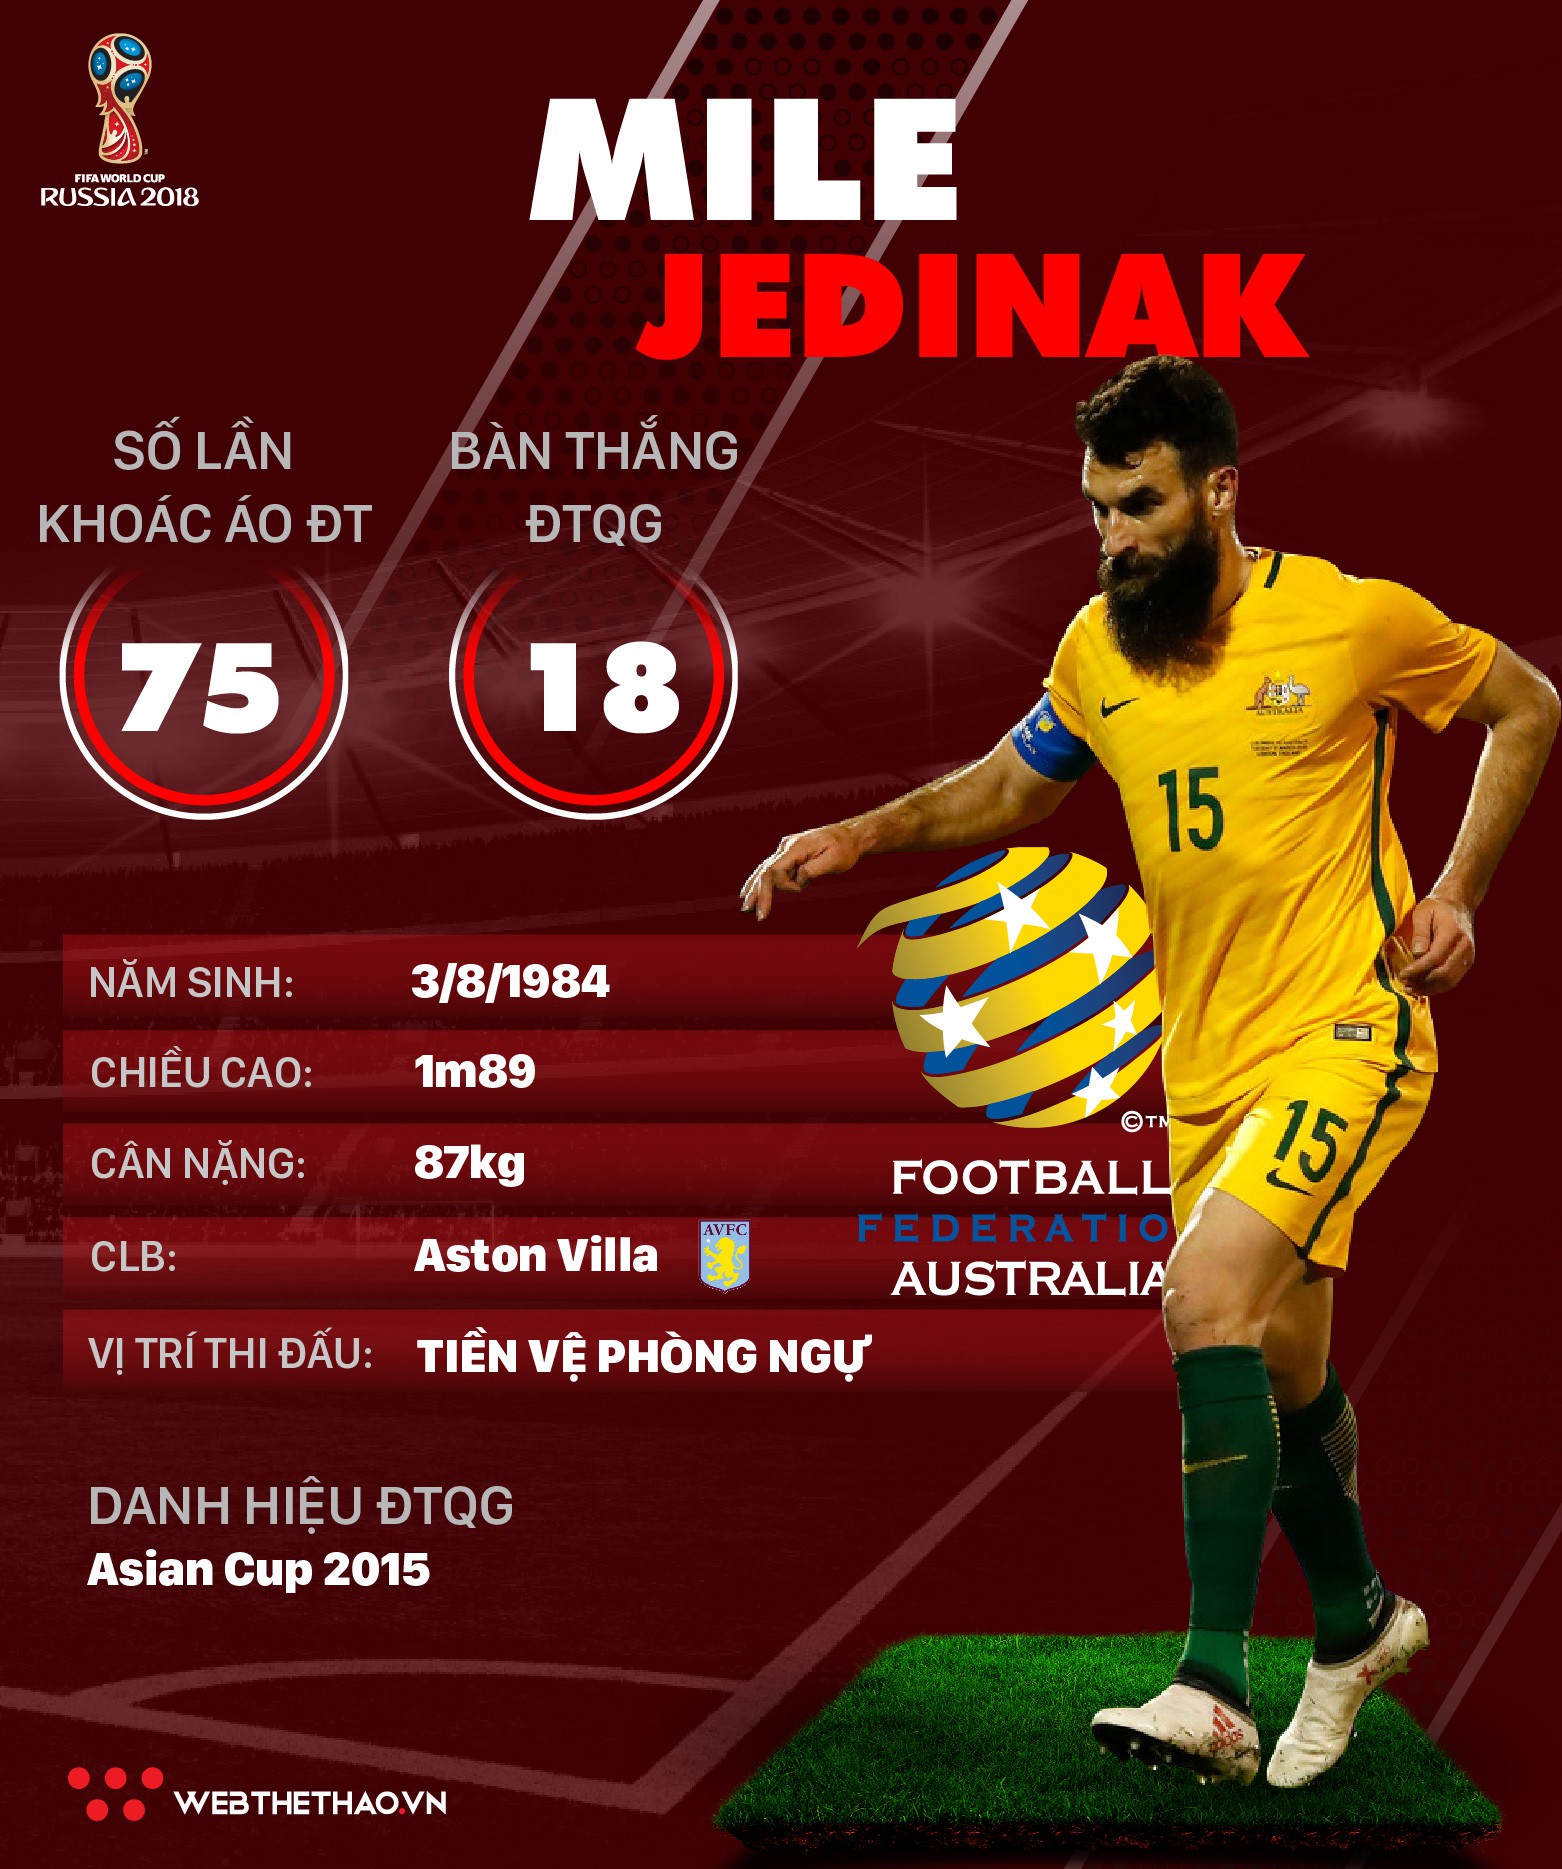 Thông tin cầu thủ Mile Jedinak của ĐT Australia dự World Cup 2018 - Ảnh 1.